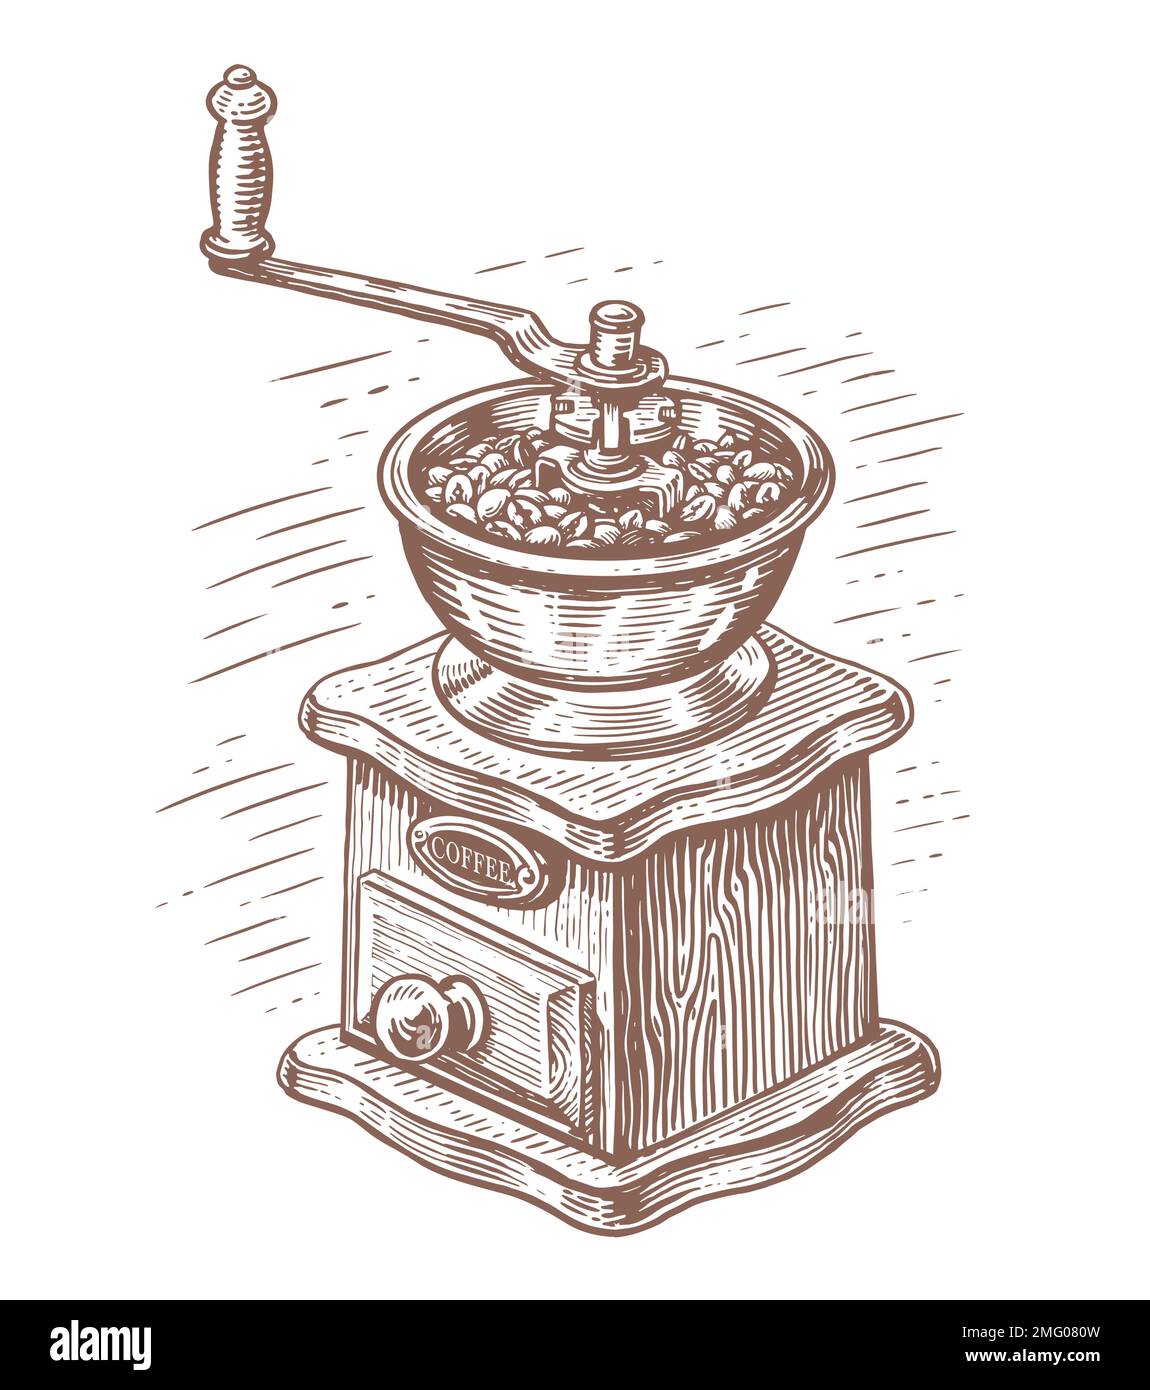 Moulin à café manuel pour moudre les grains de café. Ancien moulin à café rétro en bois dessiné à la main, avec une gravure vintage Illustration de Vecteur